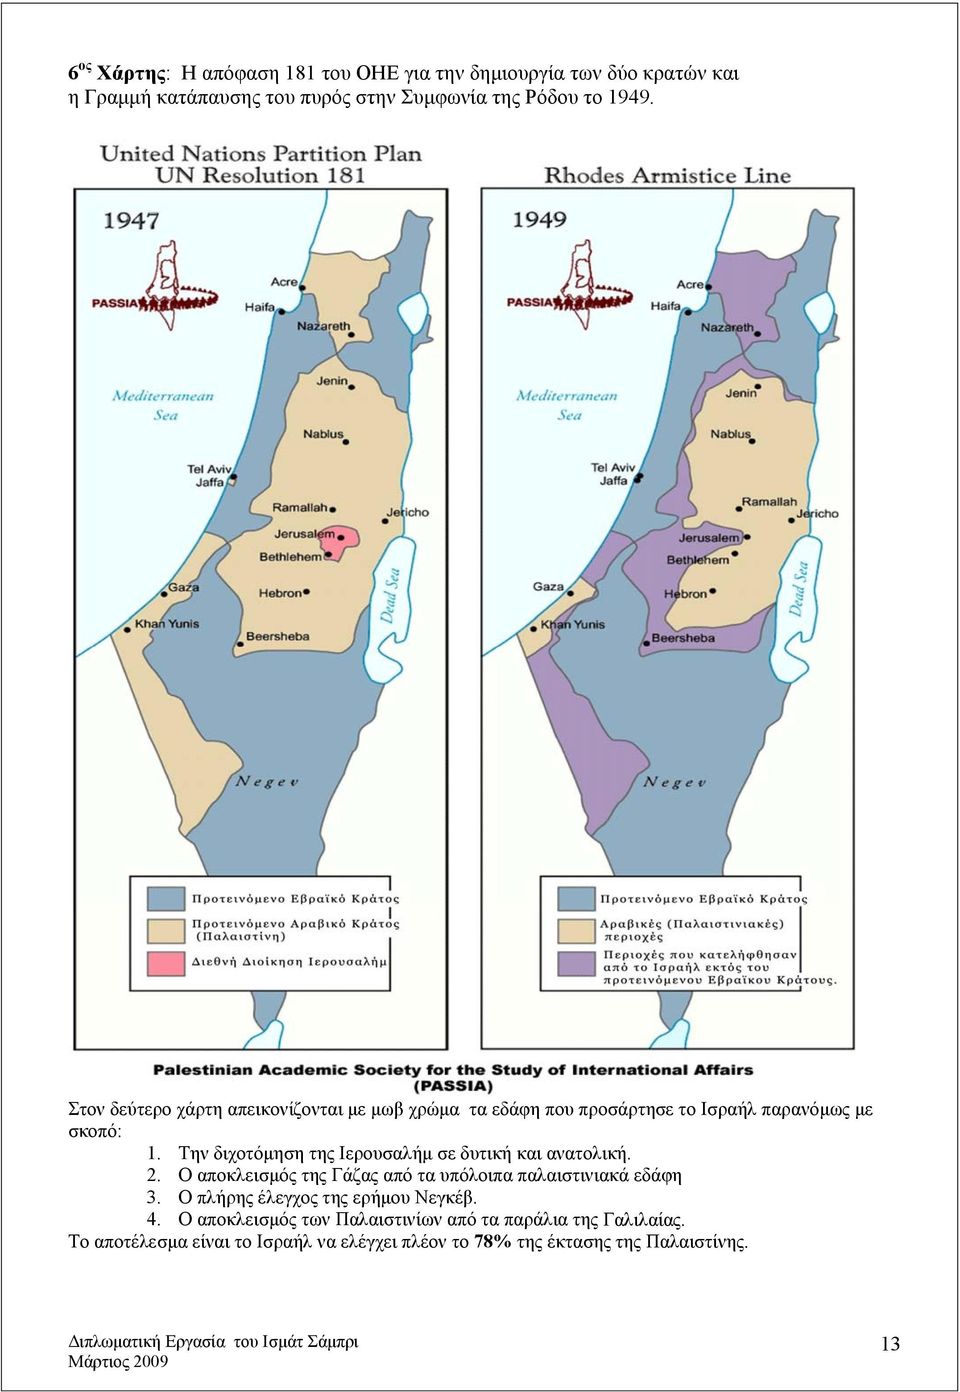 Την διχοτόμηση της Ιερουσαλήμ σε δυτική και ανατολική. 2. Ο αποκλεισμός της Γάζας από τα υπόλοιπα παλαιστινιακά εδάφη 3.